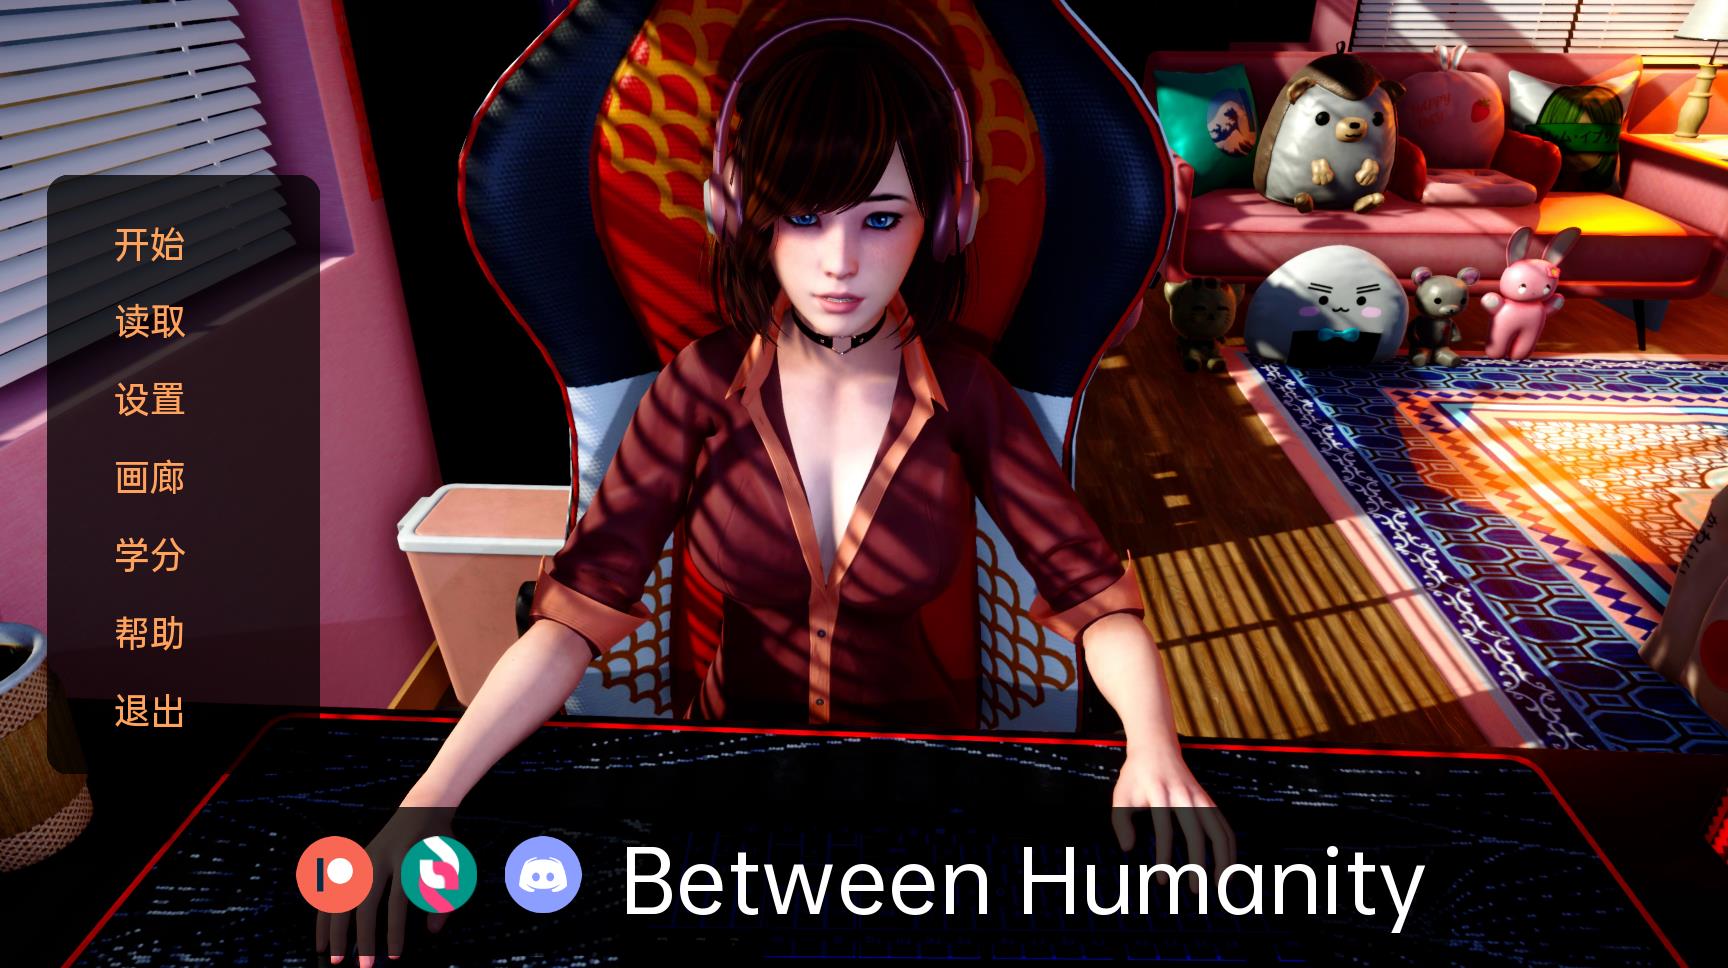 【亚洲风SLG/中文/动态】人性之间 Between Humanity v0.1 汉化版【PC+安卓/1.6G/新作】-游戏论